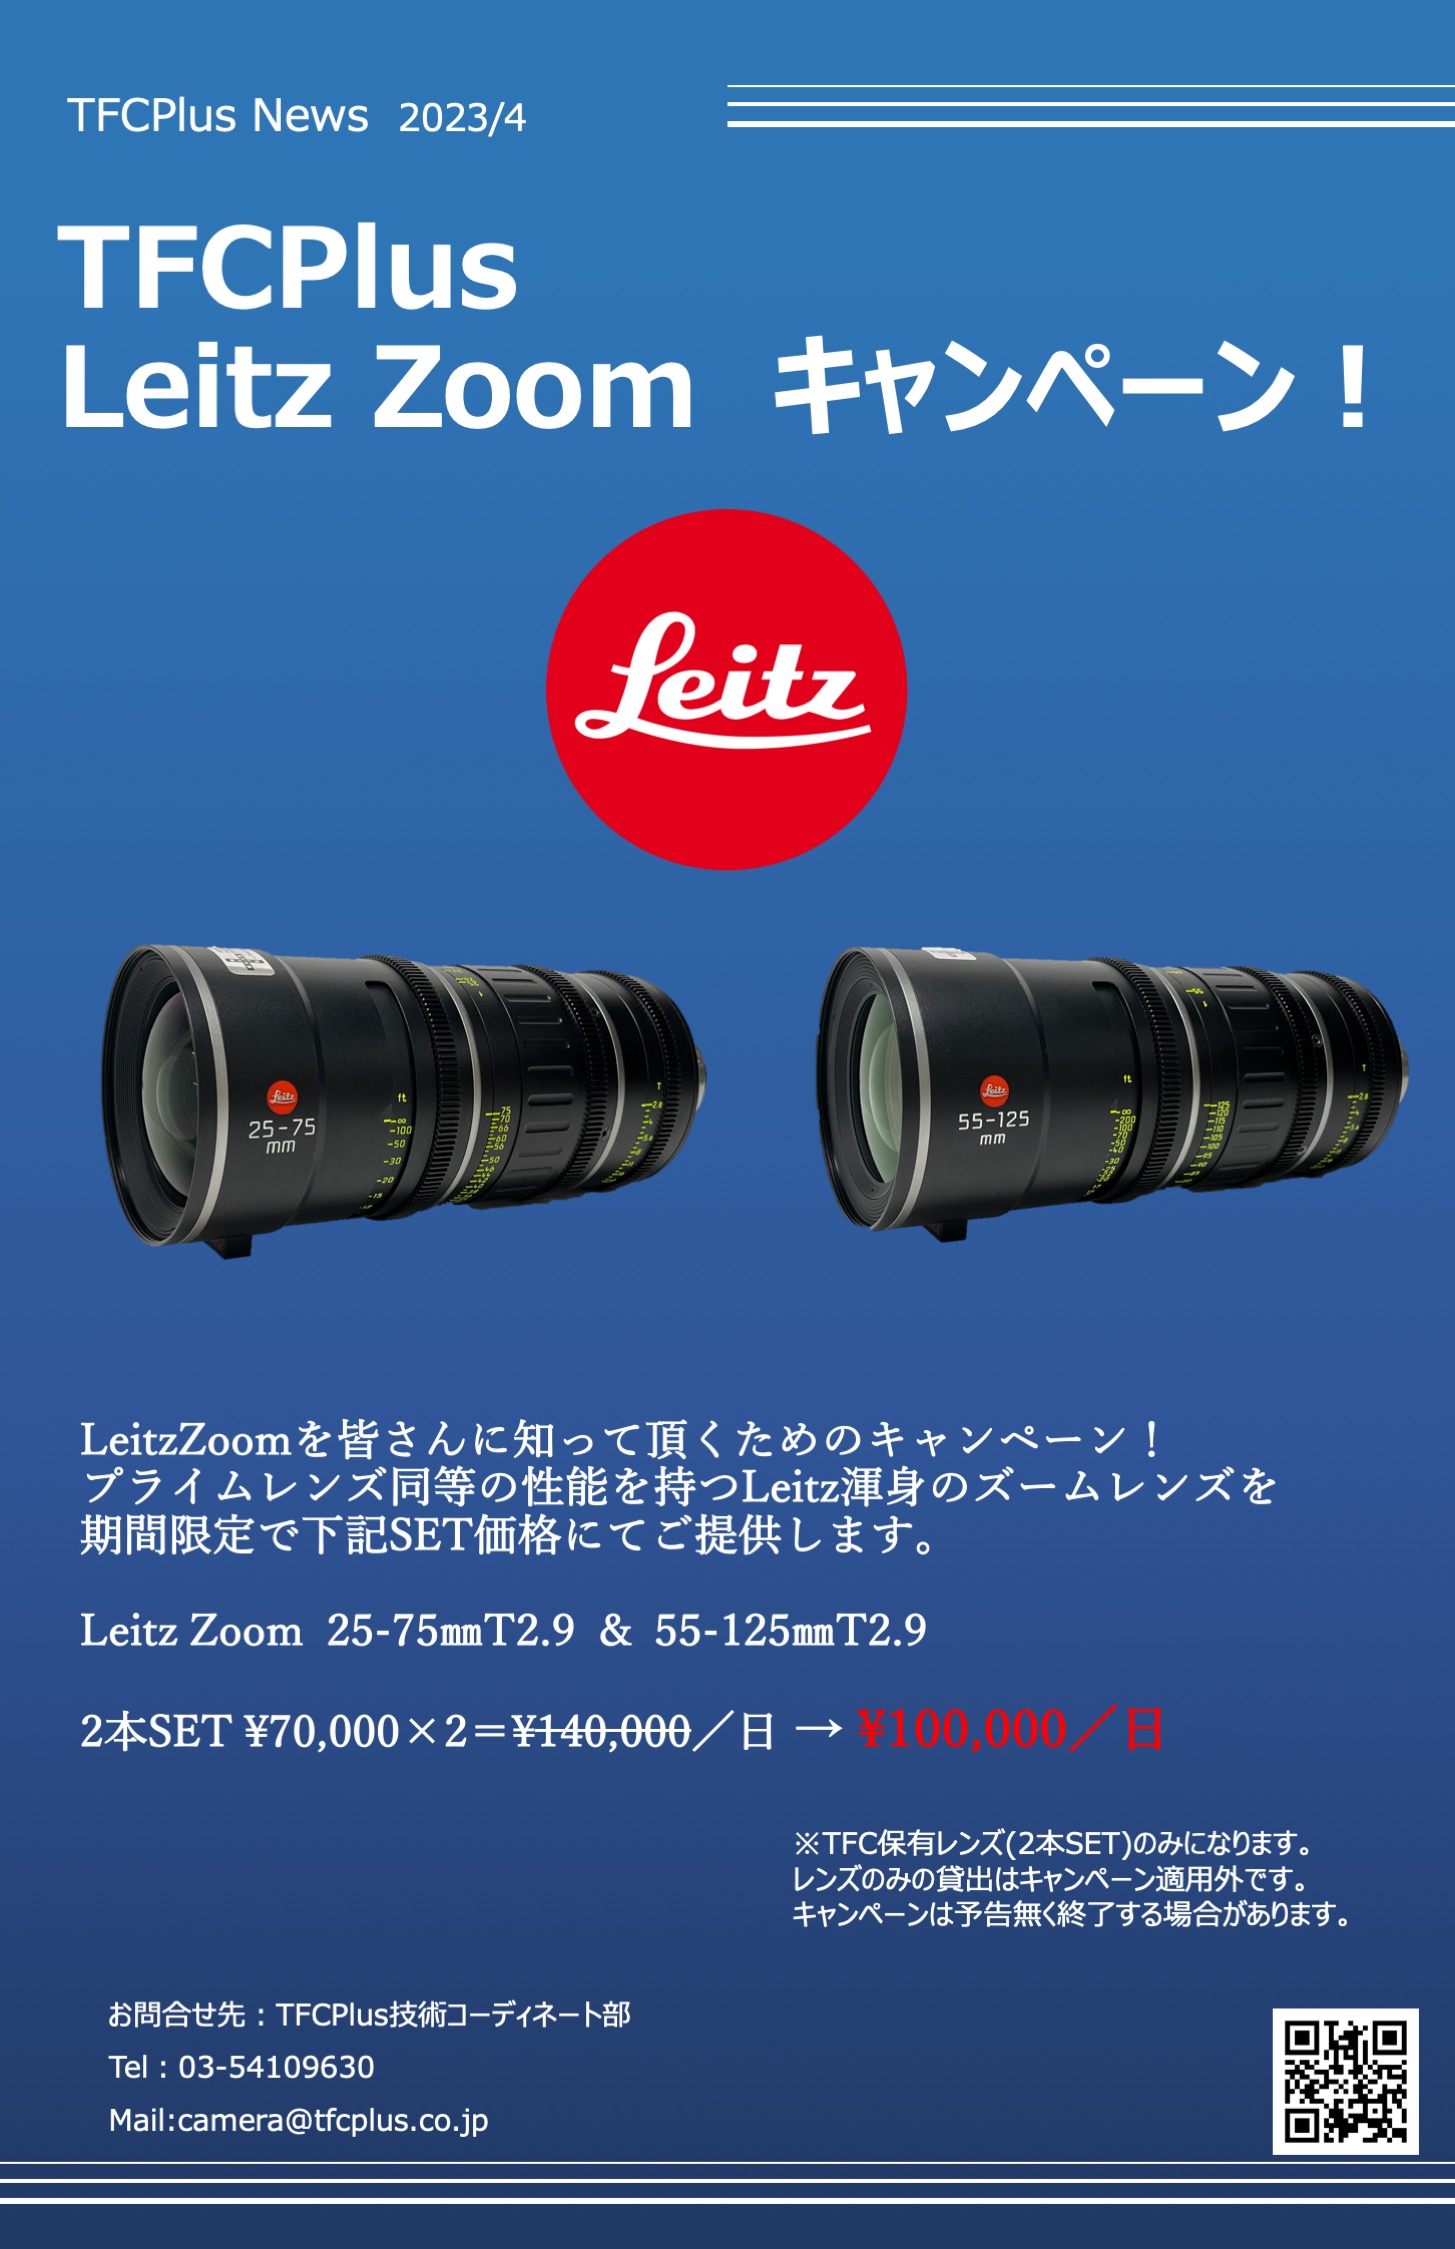 Leitz Zoom キャンペーン_1